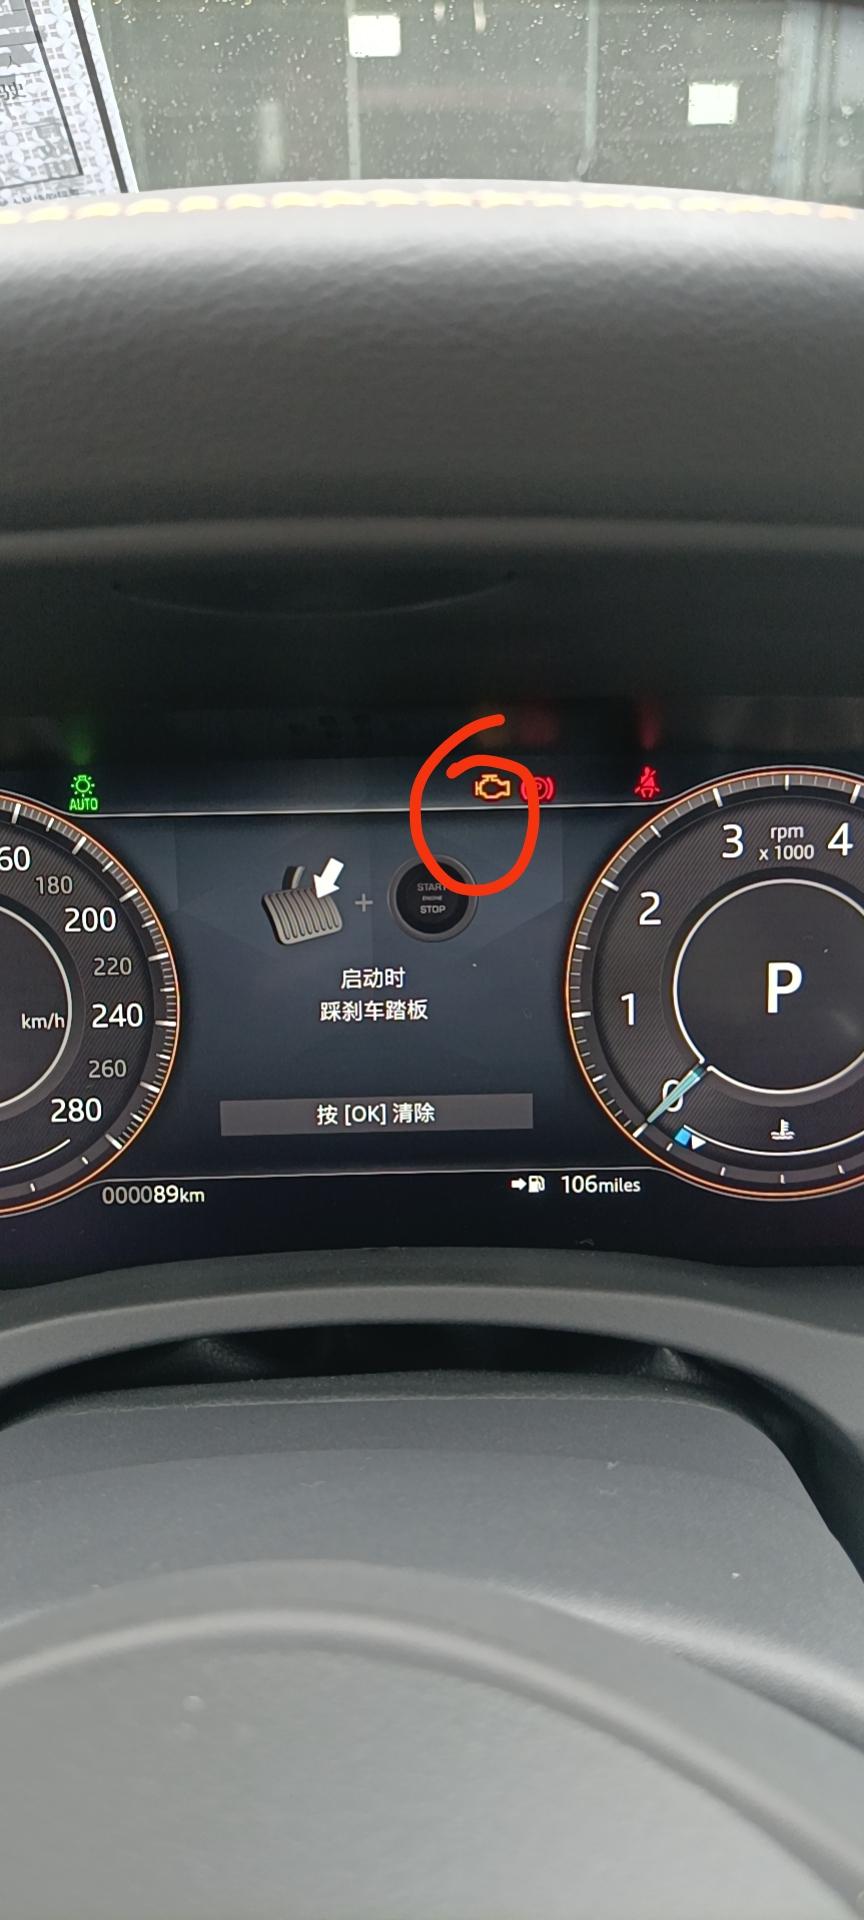 捷豹XEL 刚提车回来就发现有这个图标，现象是这样的，先启动车机未启动发动机时就会显示这个图标，启动发动机后图标就消失了